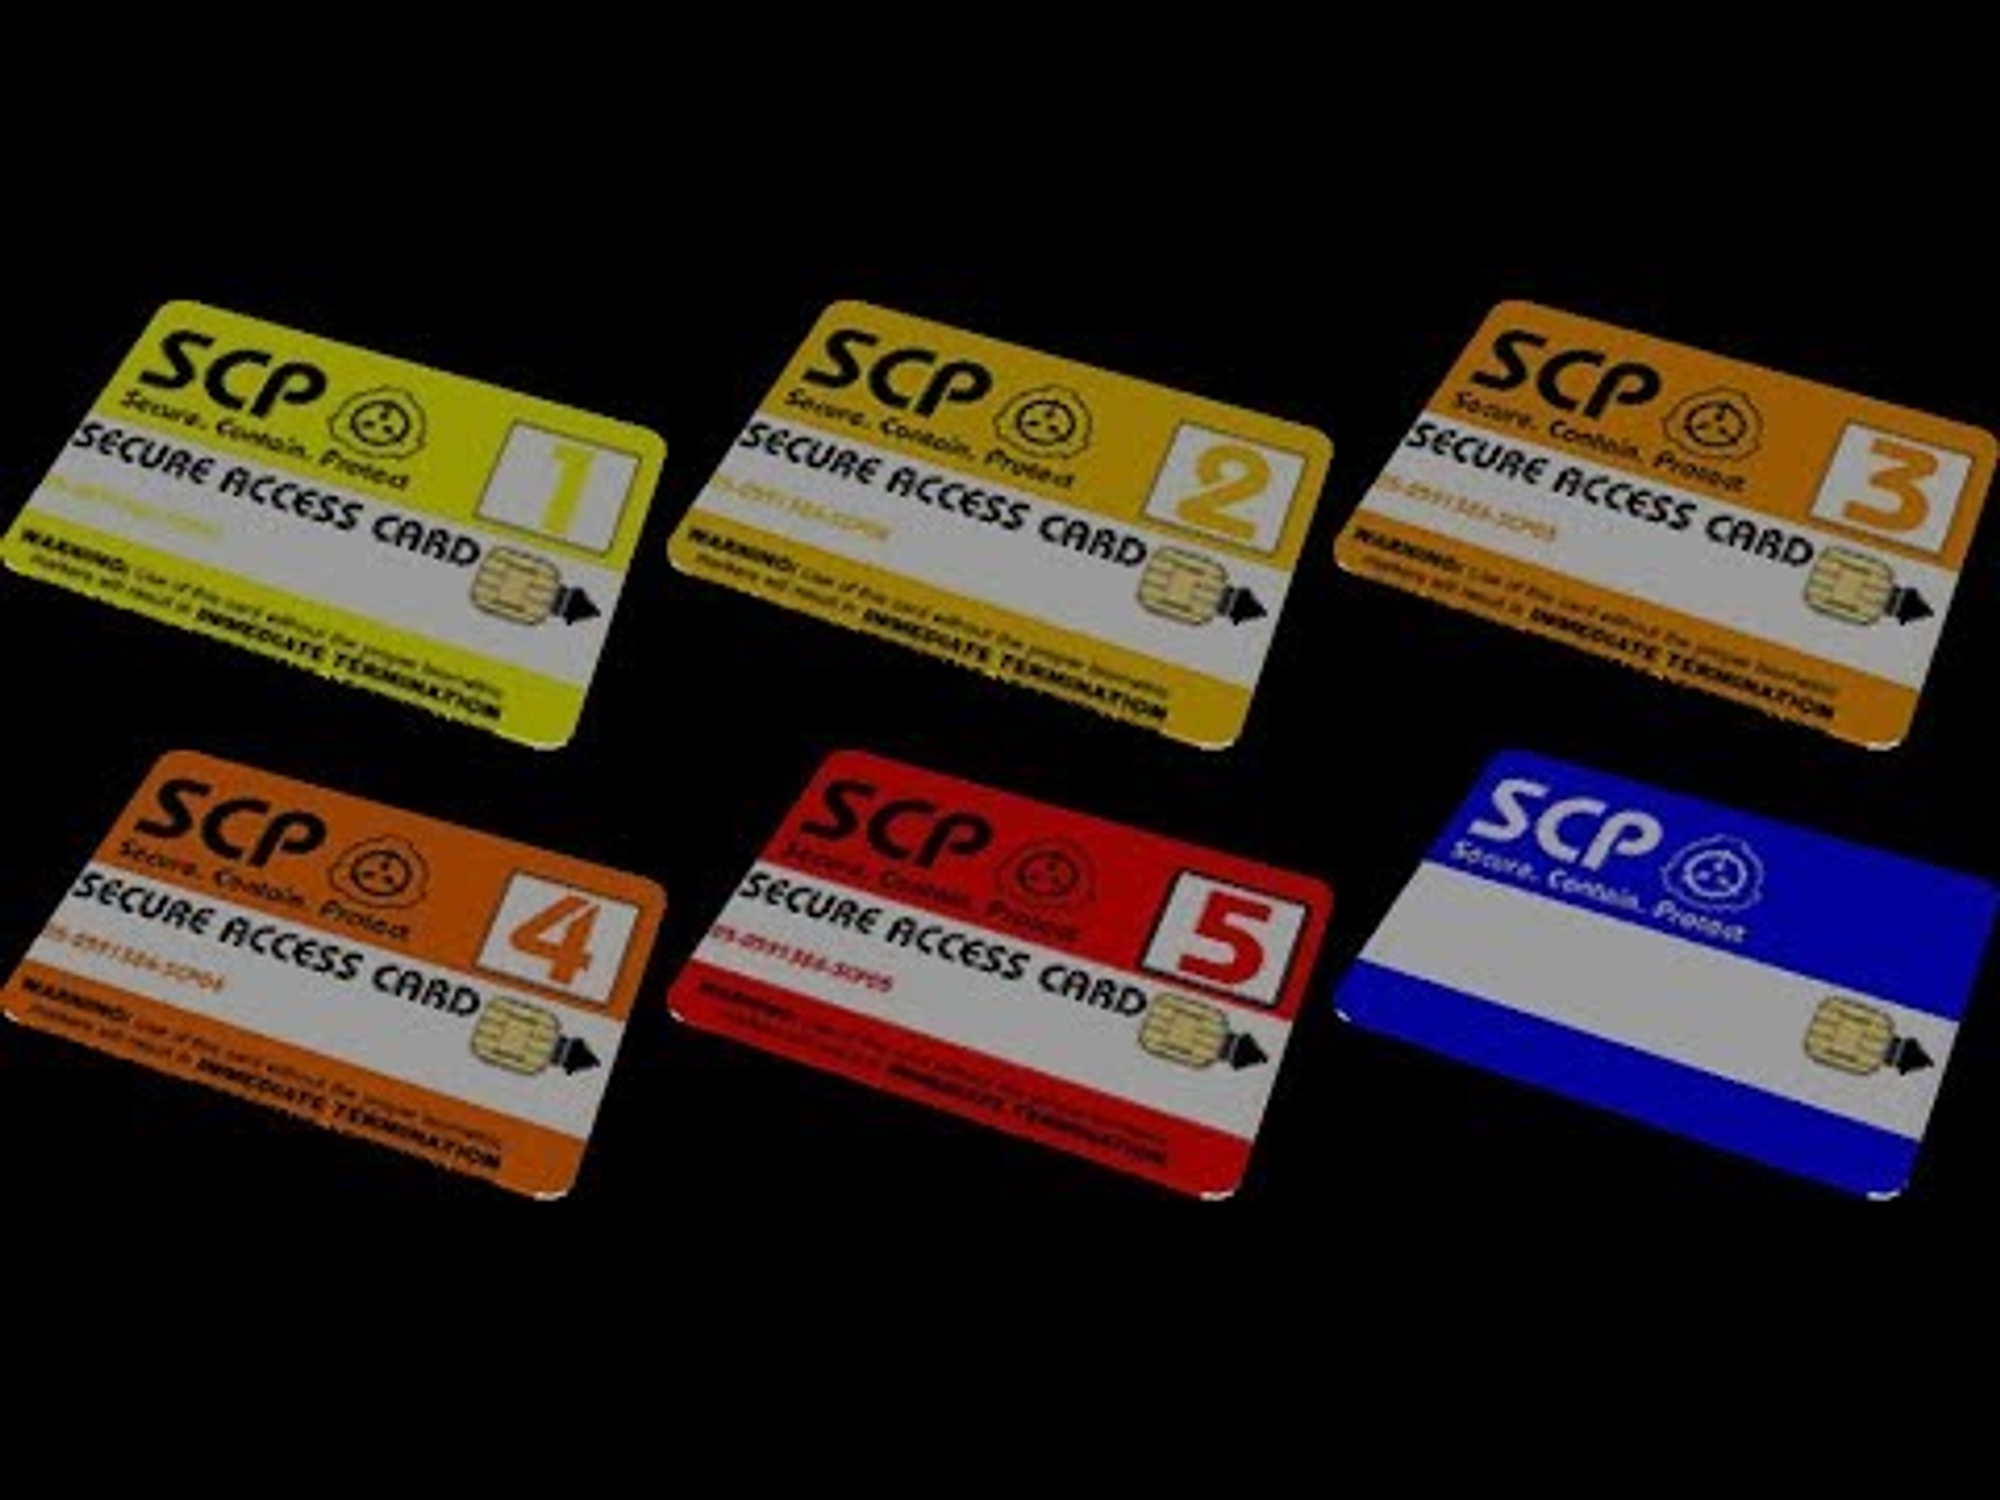 Карты доступа SCP. Карты допуска SCP. Карта доступа SCP 05. SCP карточки допуска.